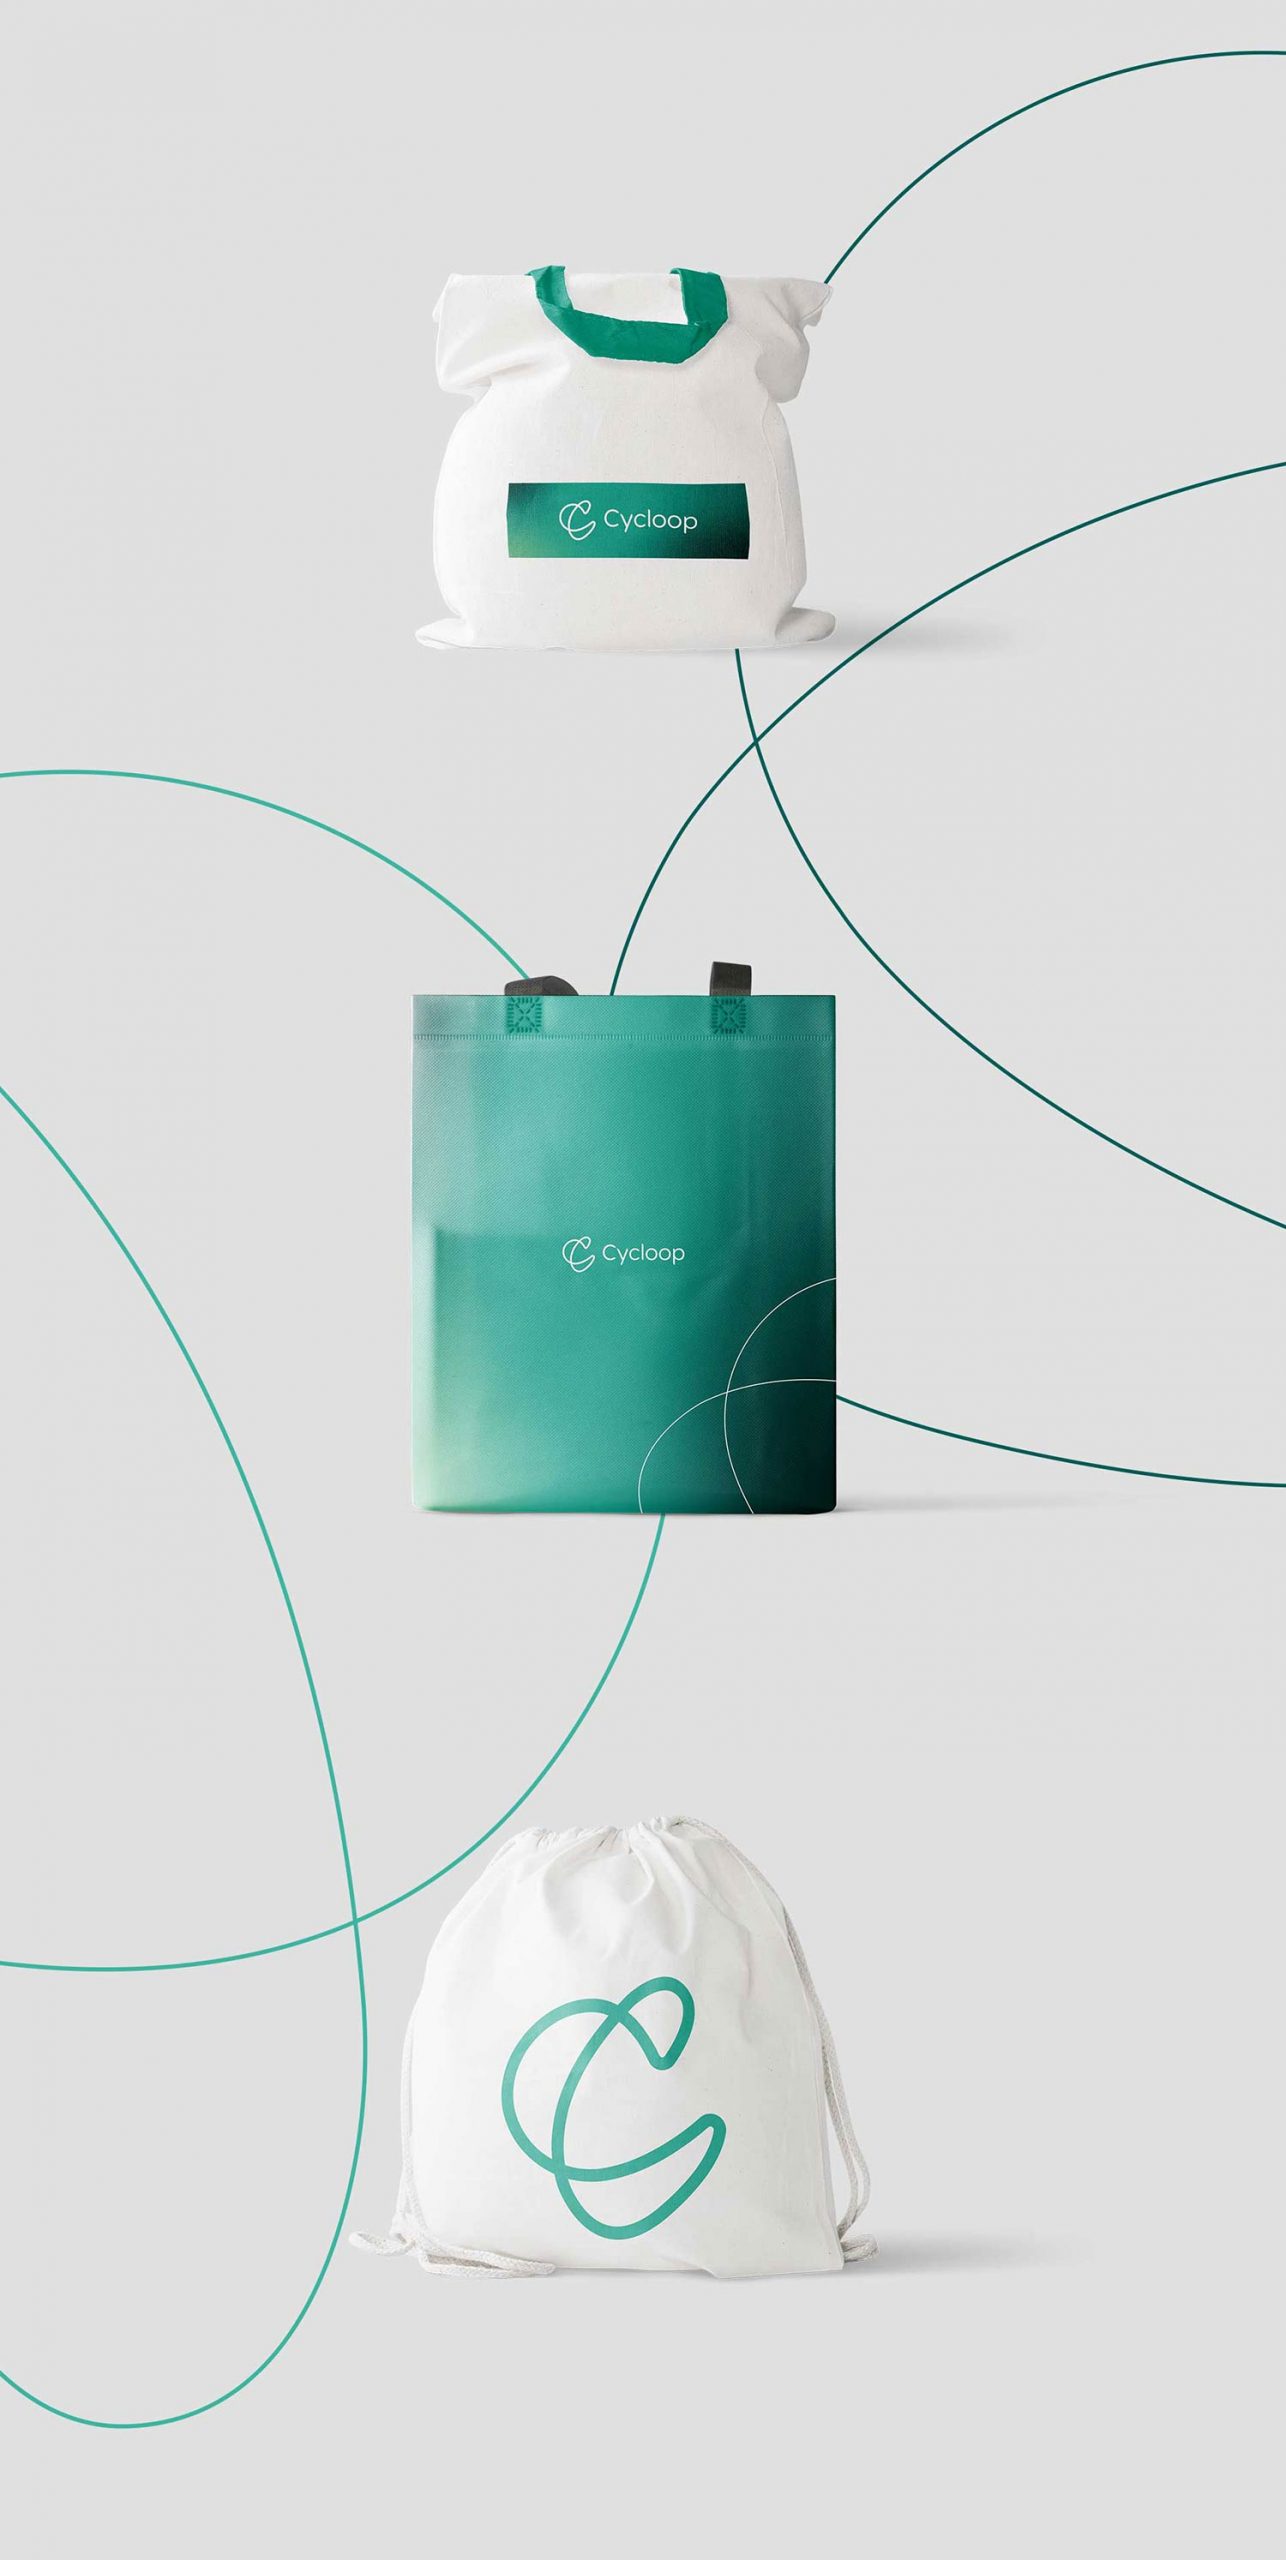 Logo e brand identity di Cycloop realizzato da SEBA! grafico di Gravellona Toce nel VCO di tre borse bianche e verdi